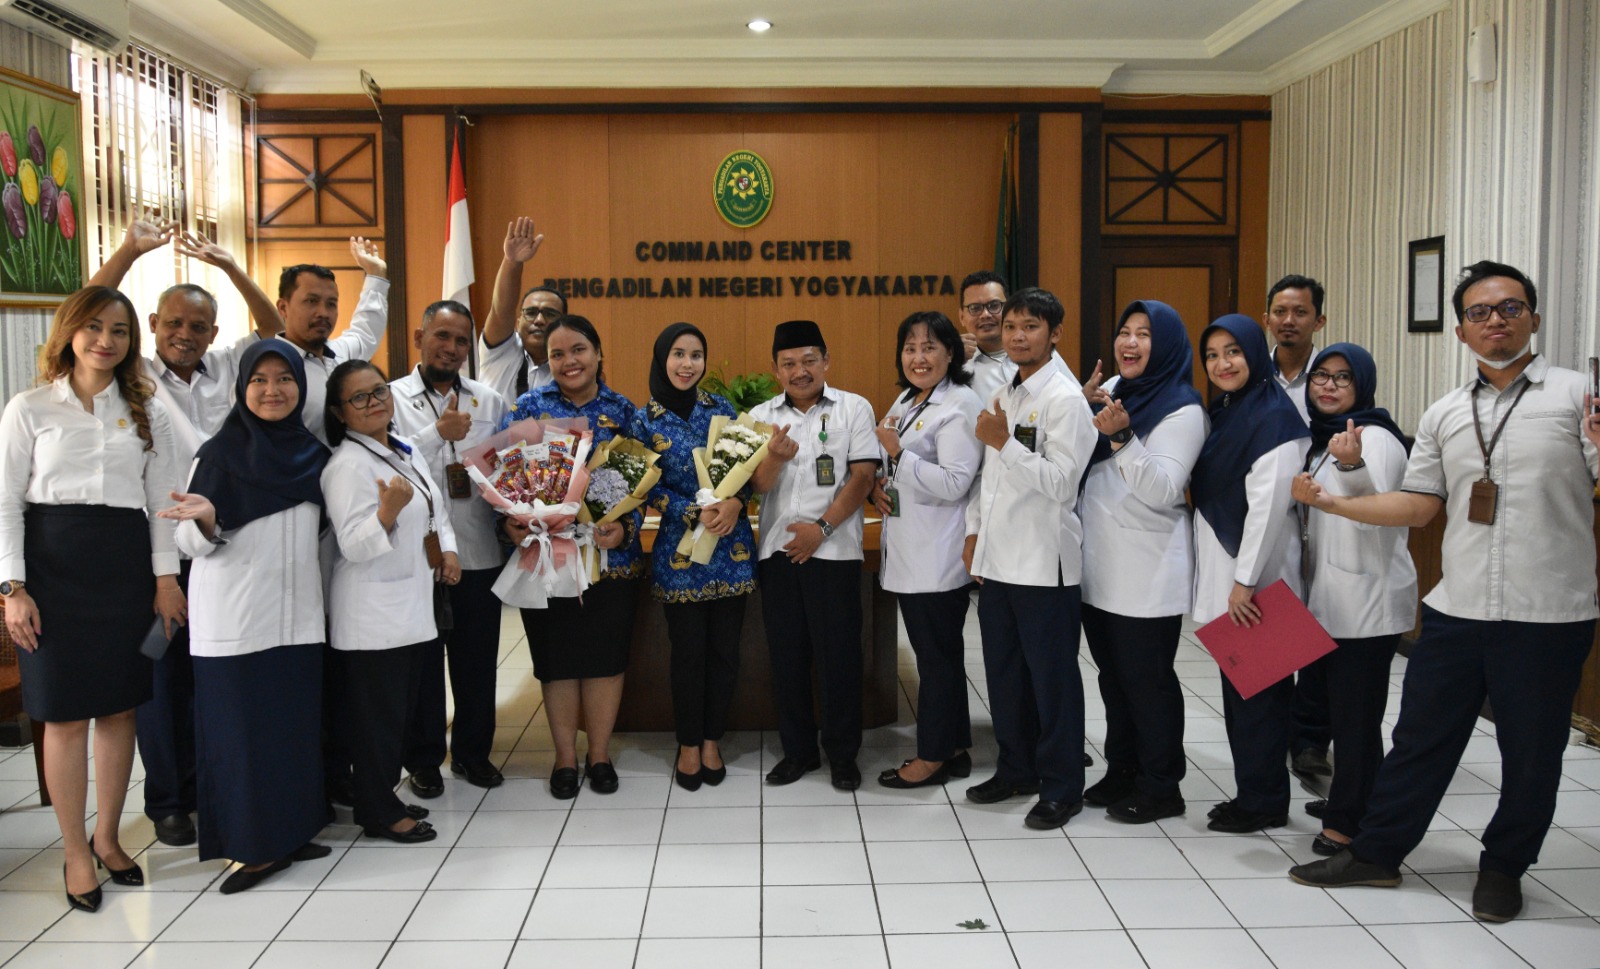 Upacara Pelantikan dan Pengambilan Sumpah Jabatan dari CPNS menjadi PNS Pengadilan Negeri Yogyakarta